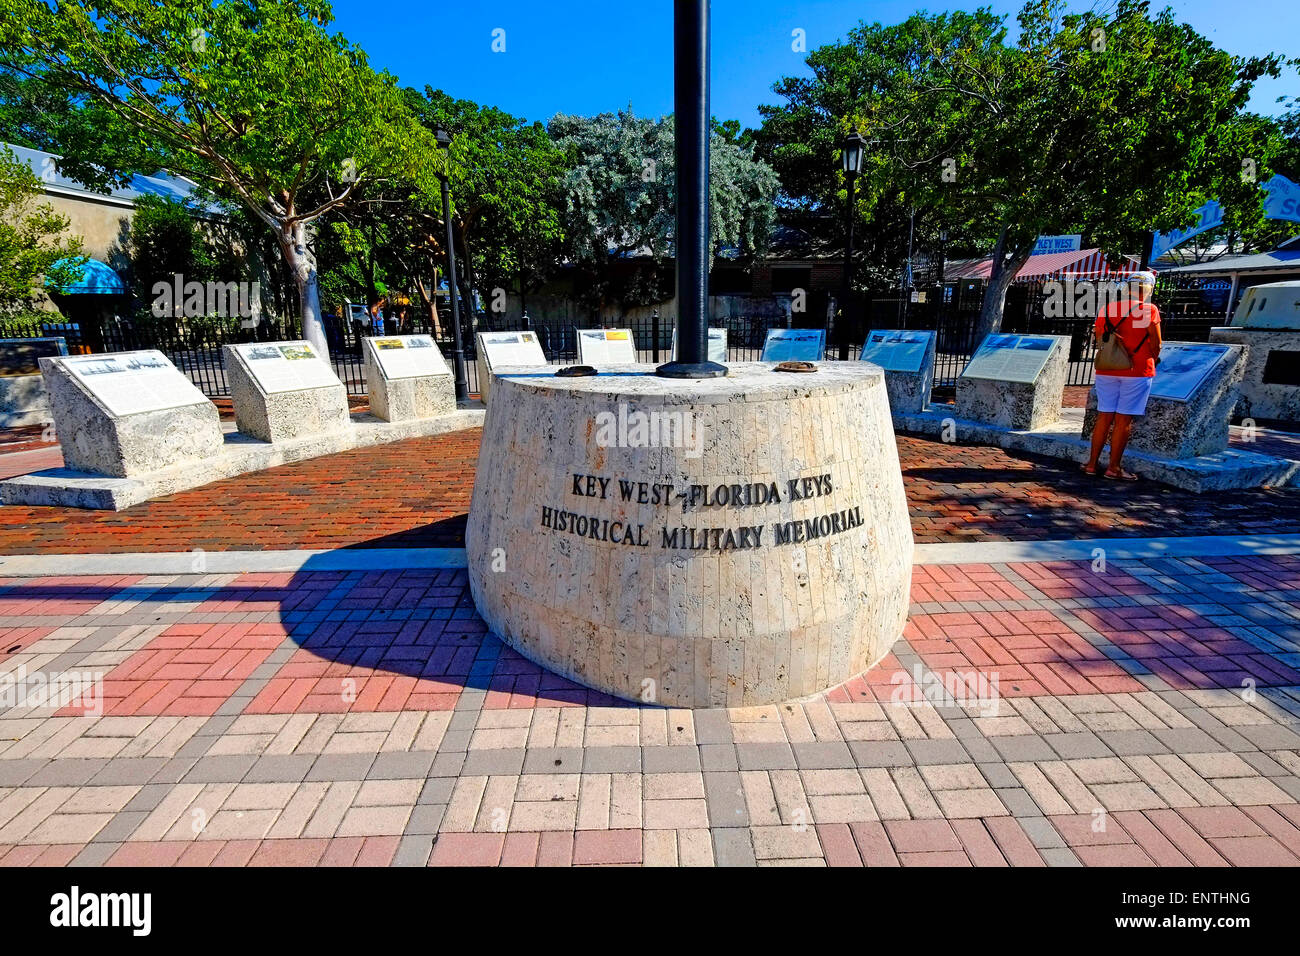 Key West FL Floride destination pour Western Caribbean Crusie cérémonie militaire historique de Tampa Banque D'Images